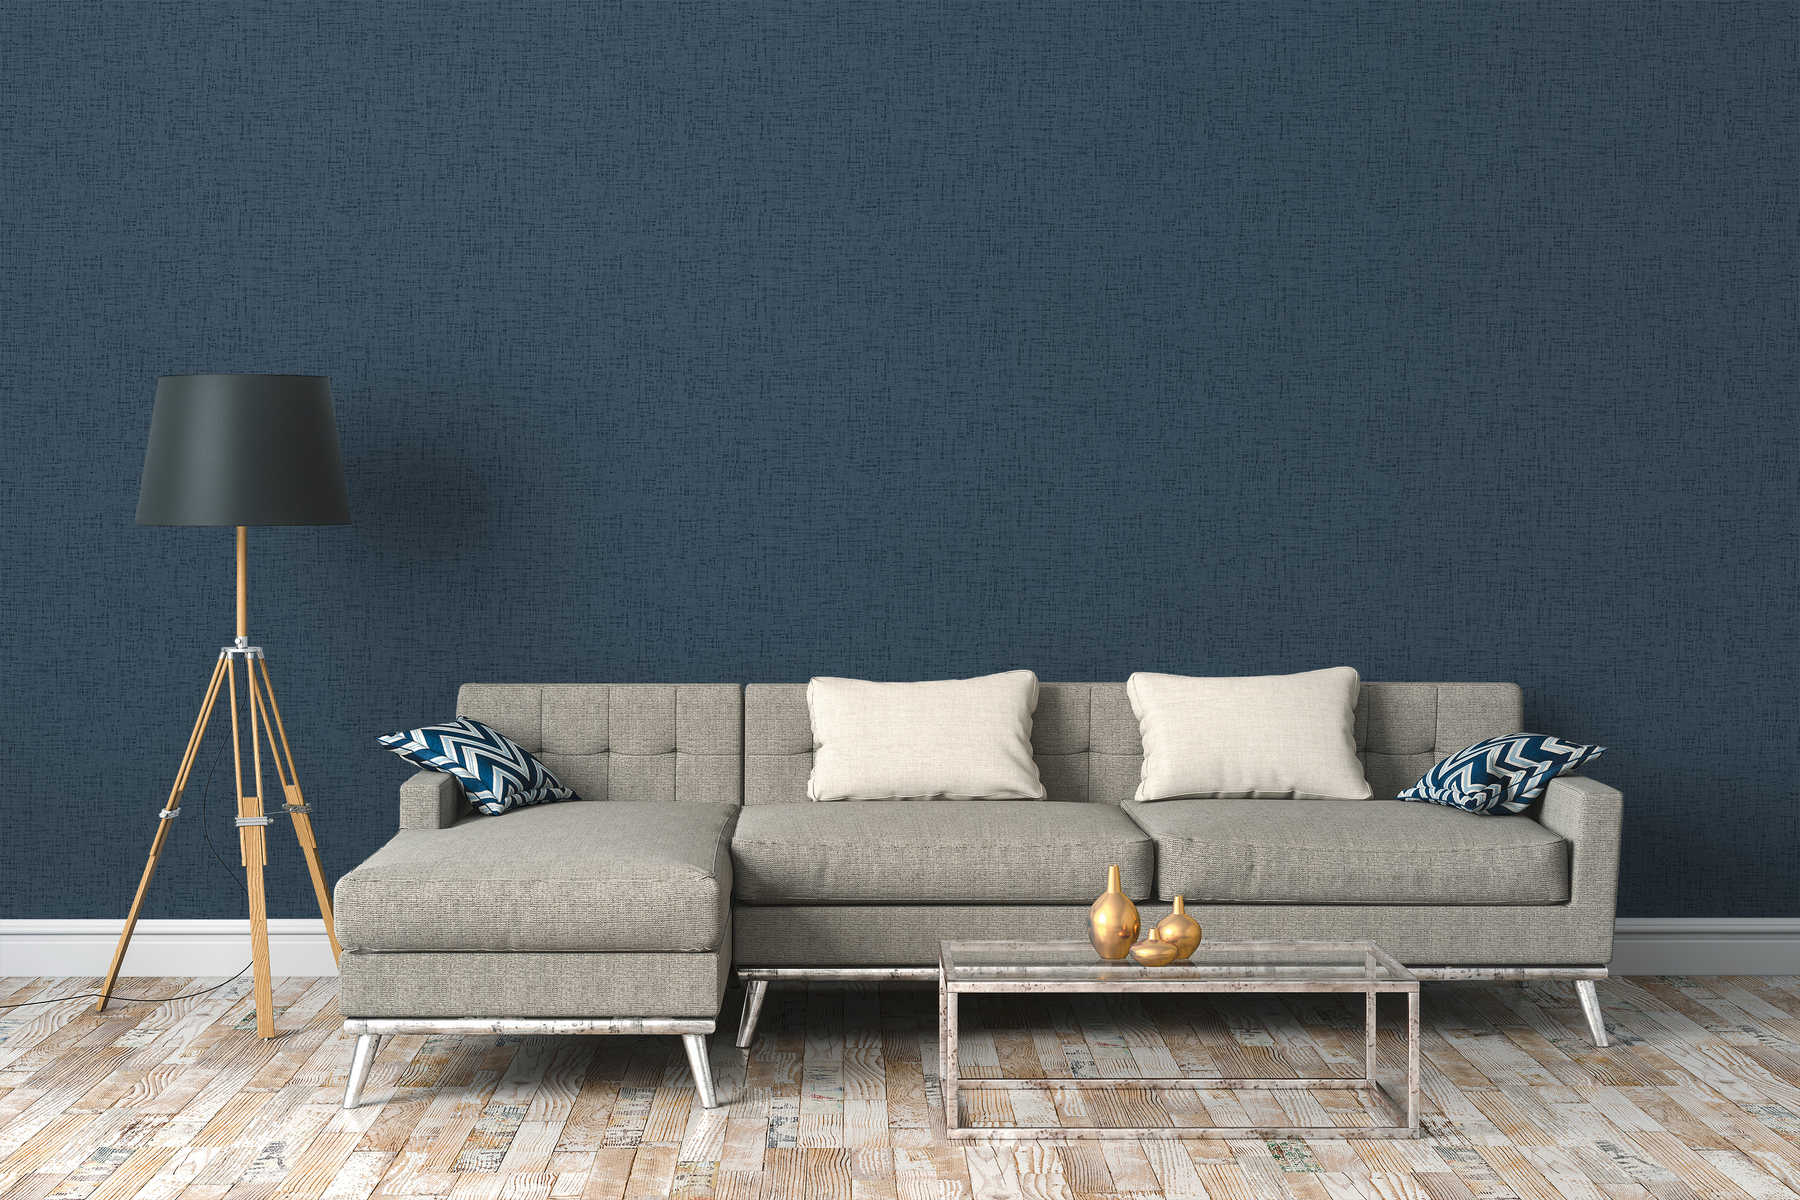             Pattern wallpaper tweed look mottled, textile look - blue
        